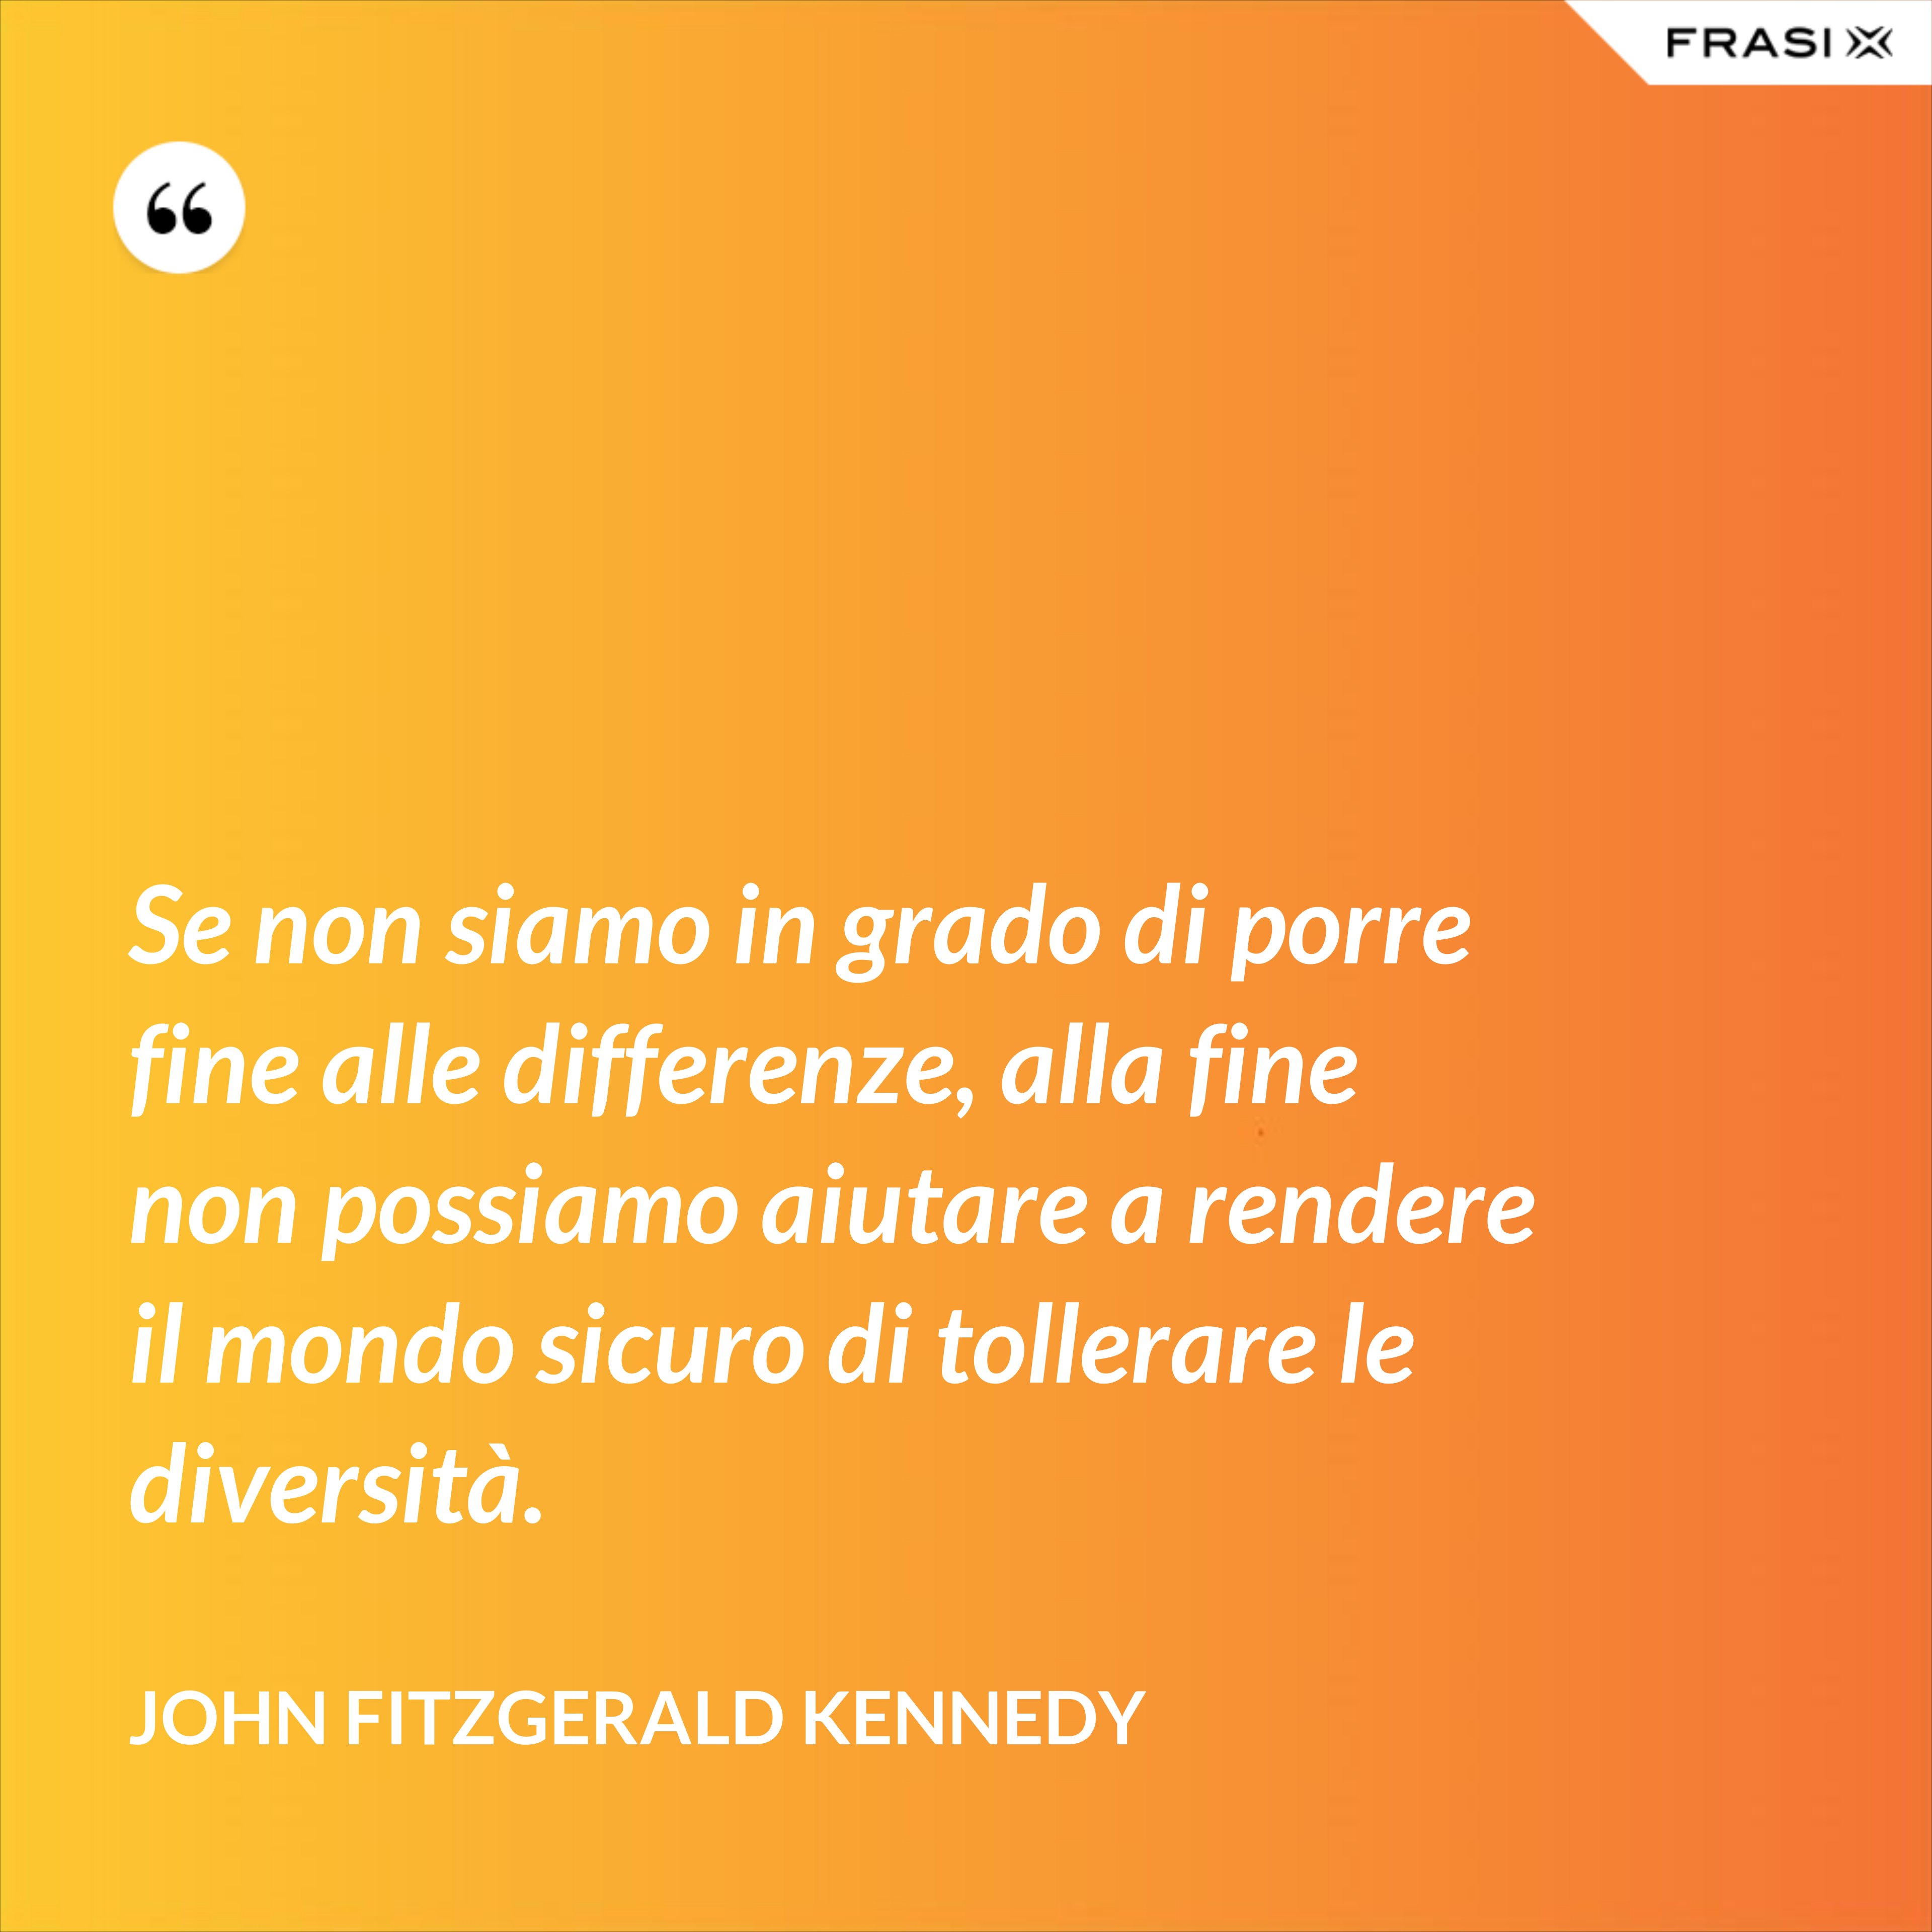 Se non siamo in grado di porre fine alle differenze, alla fine non possiamo aiutare a rendere il mondo sicuro di tollerare le diversità. - John Fitzgerald Kennedy